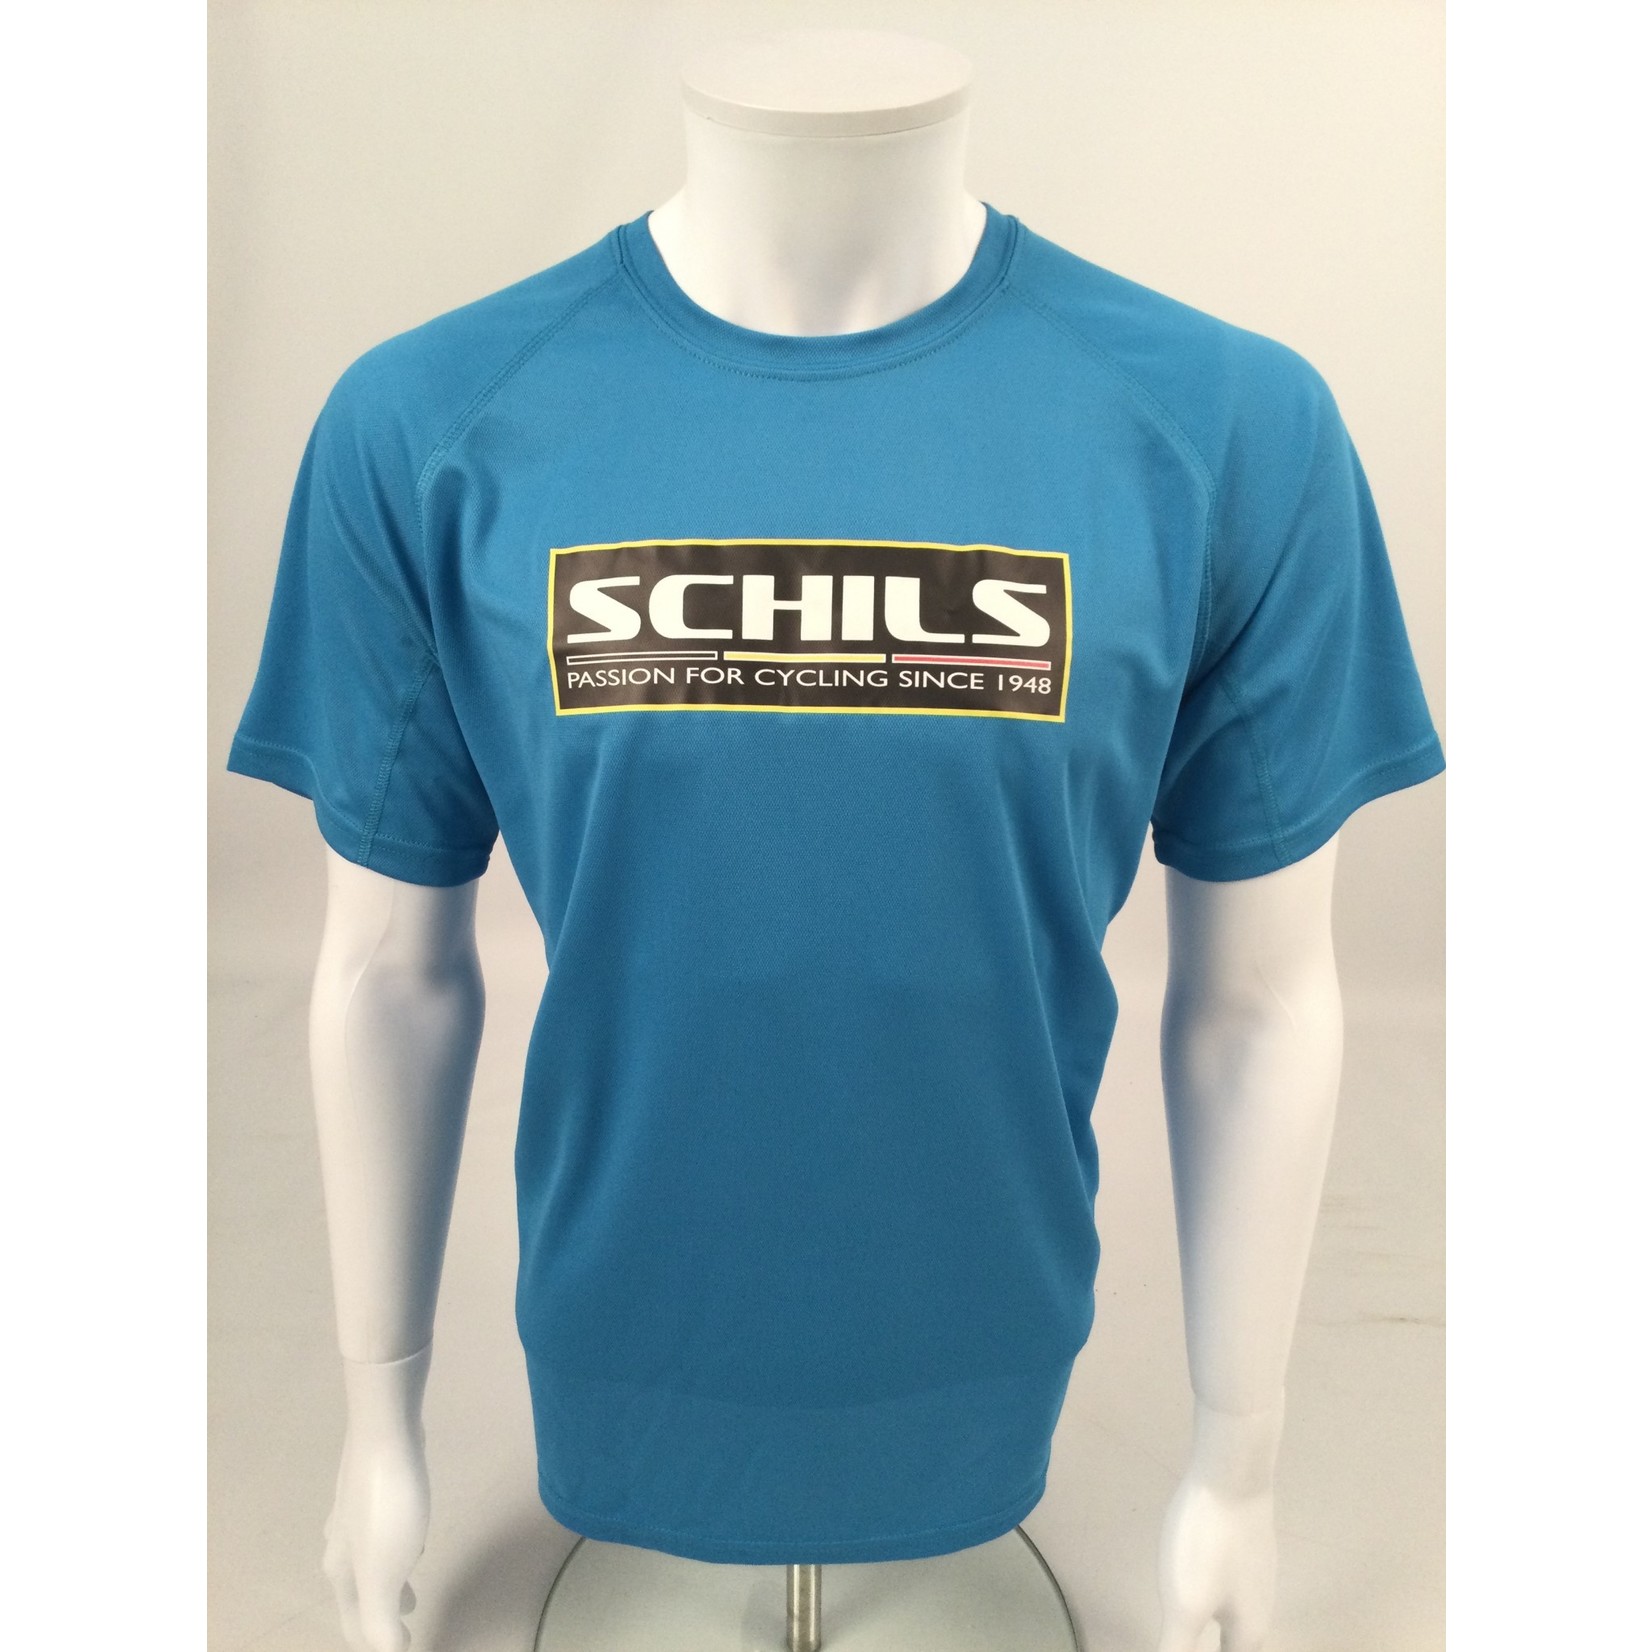 Schils T Shirt- Multiple colour options